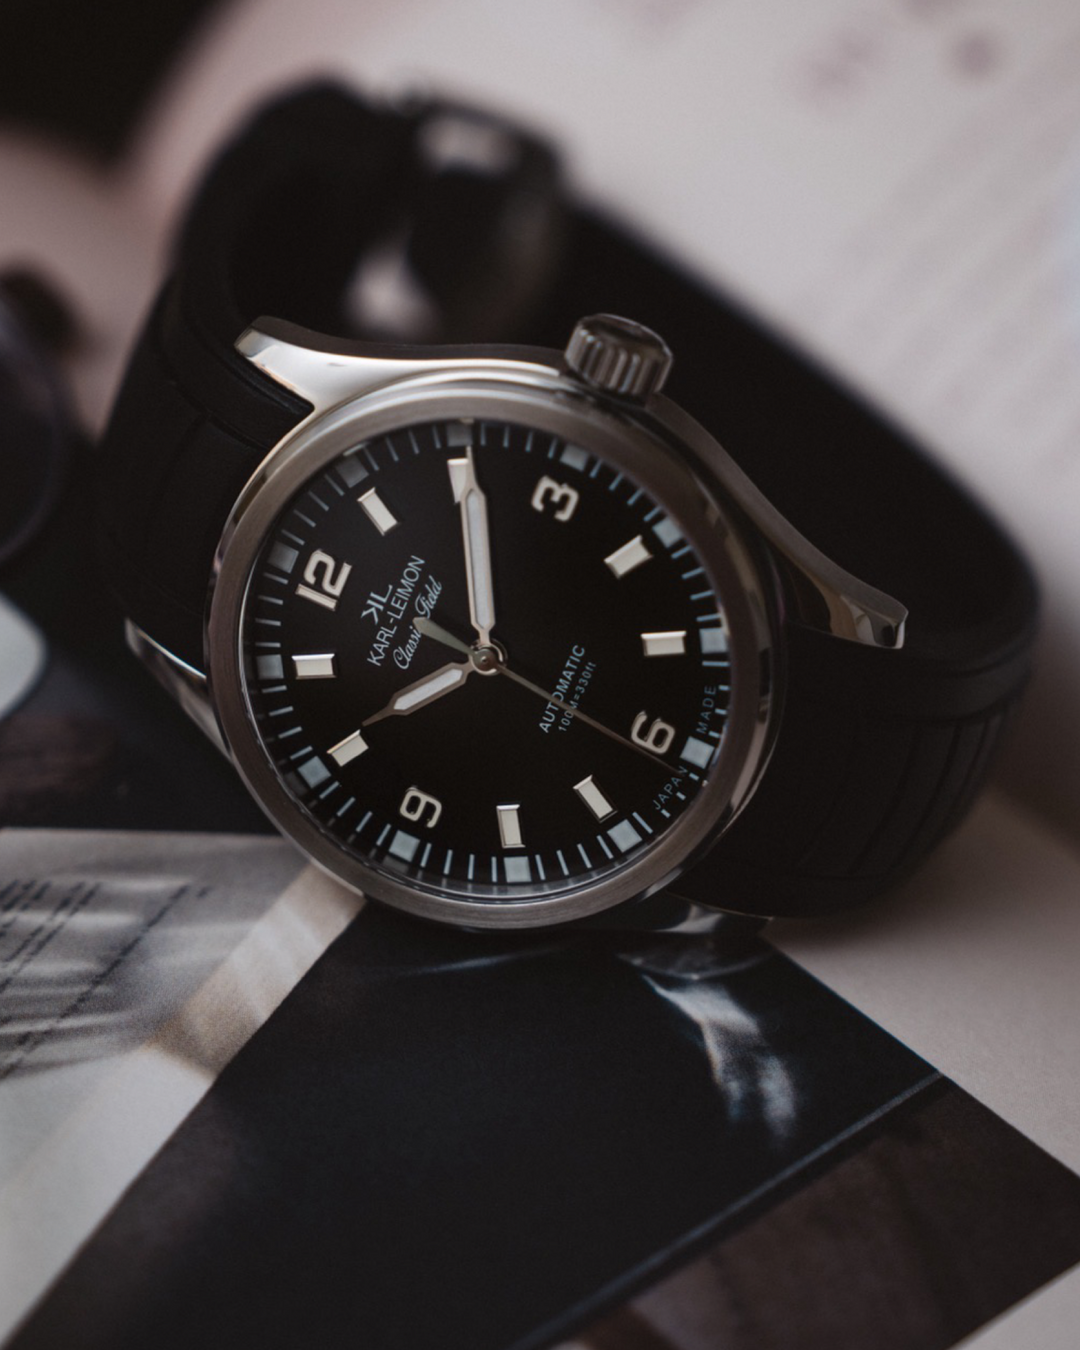 Applied Indices Black - KARL-LEIMON Watches